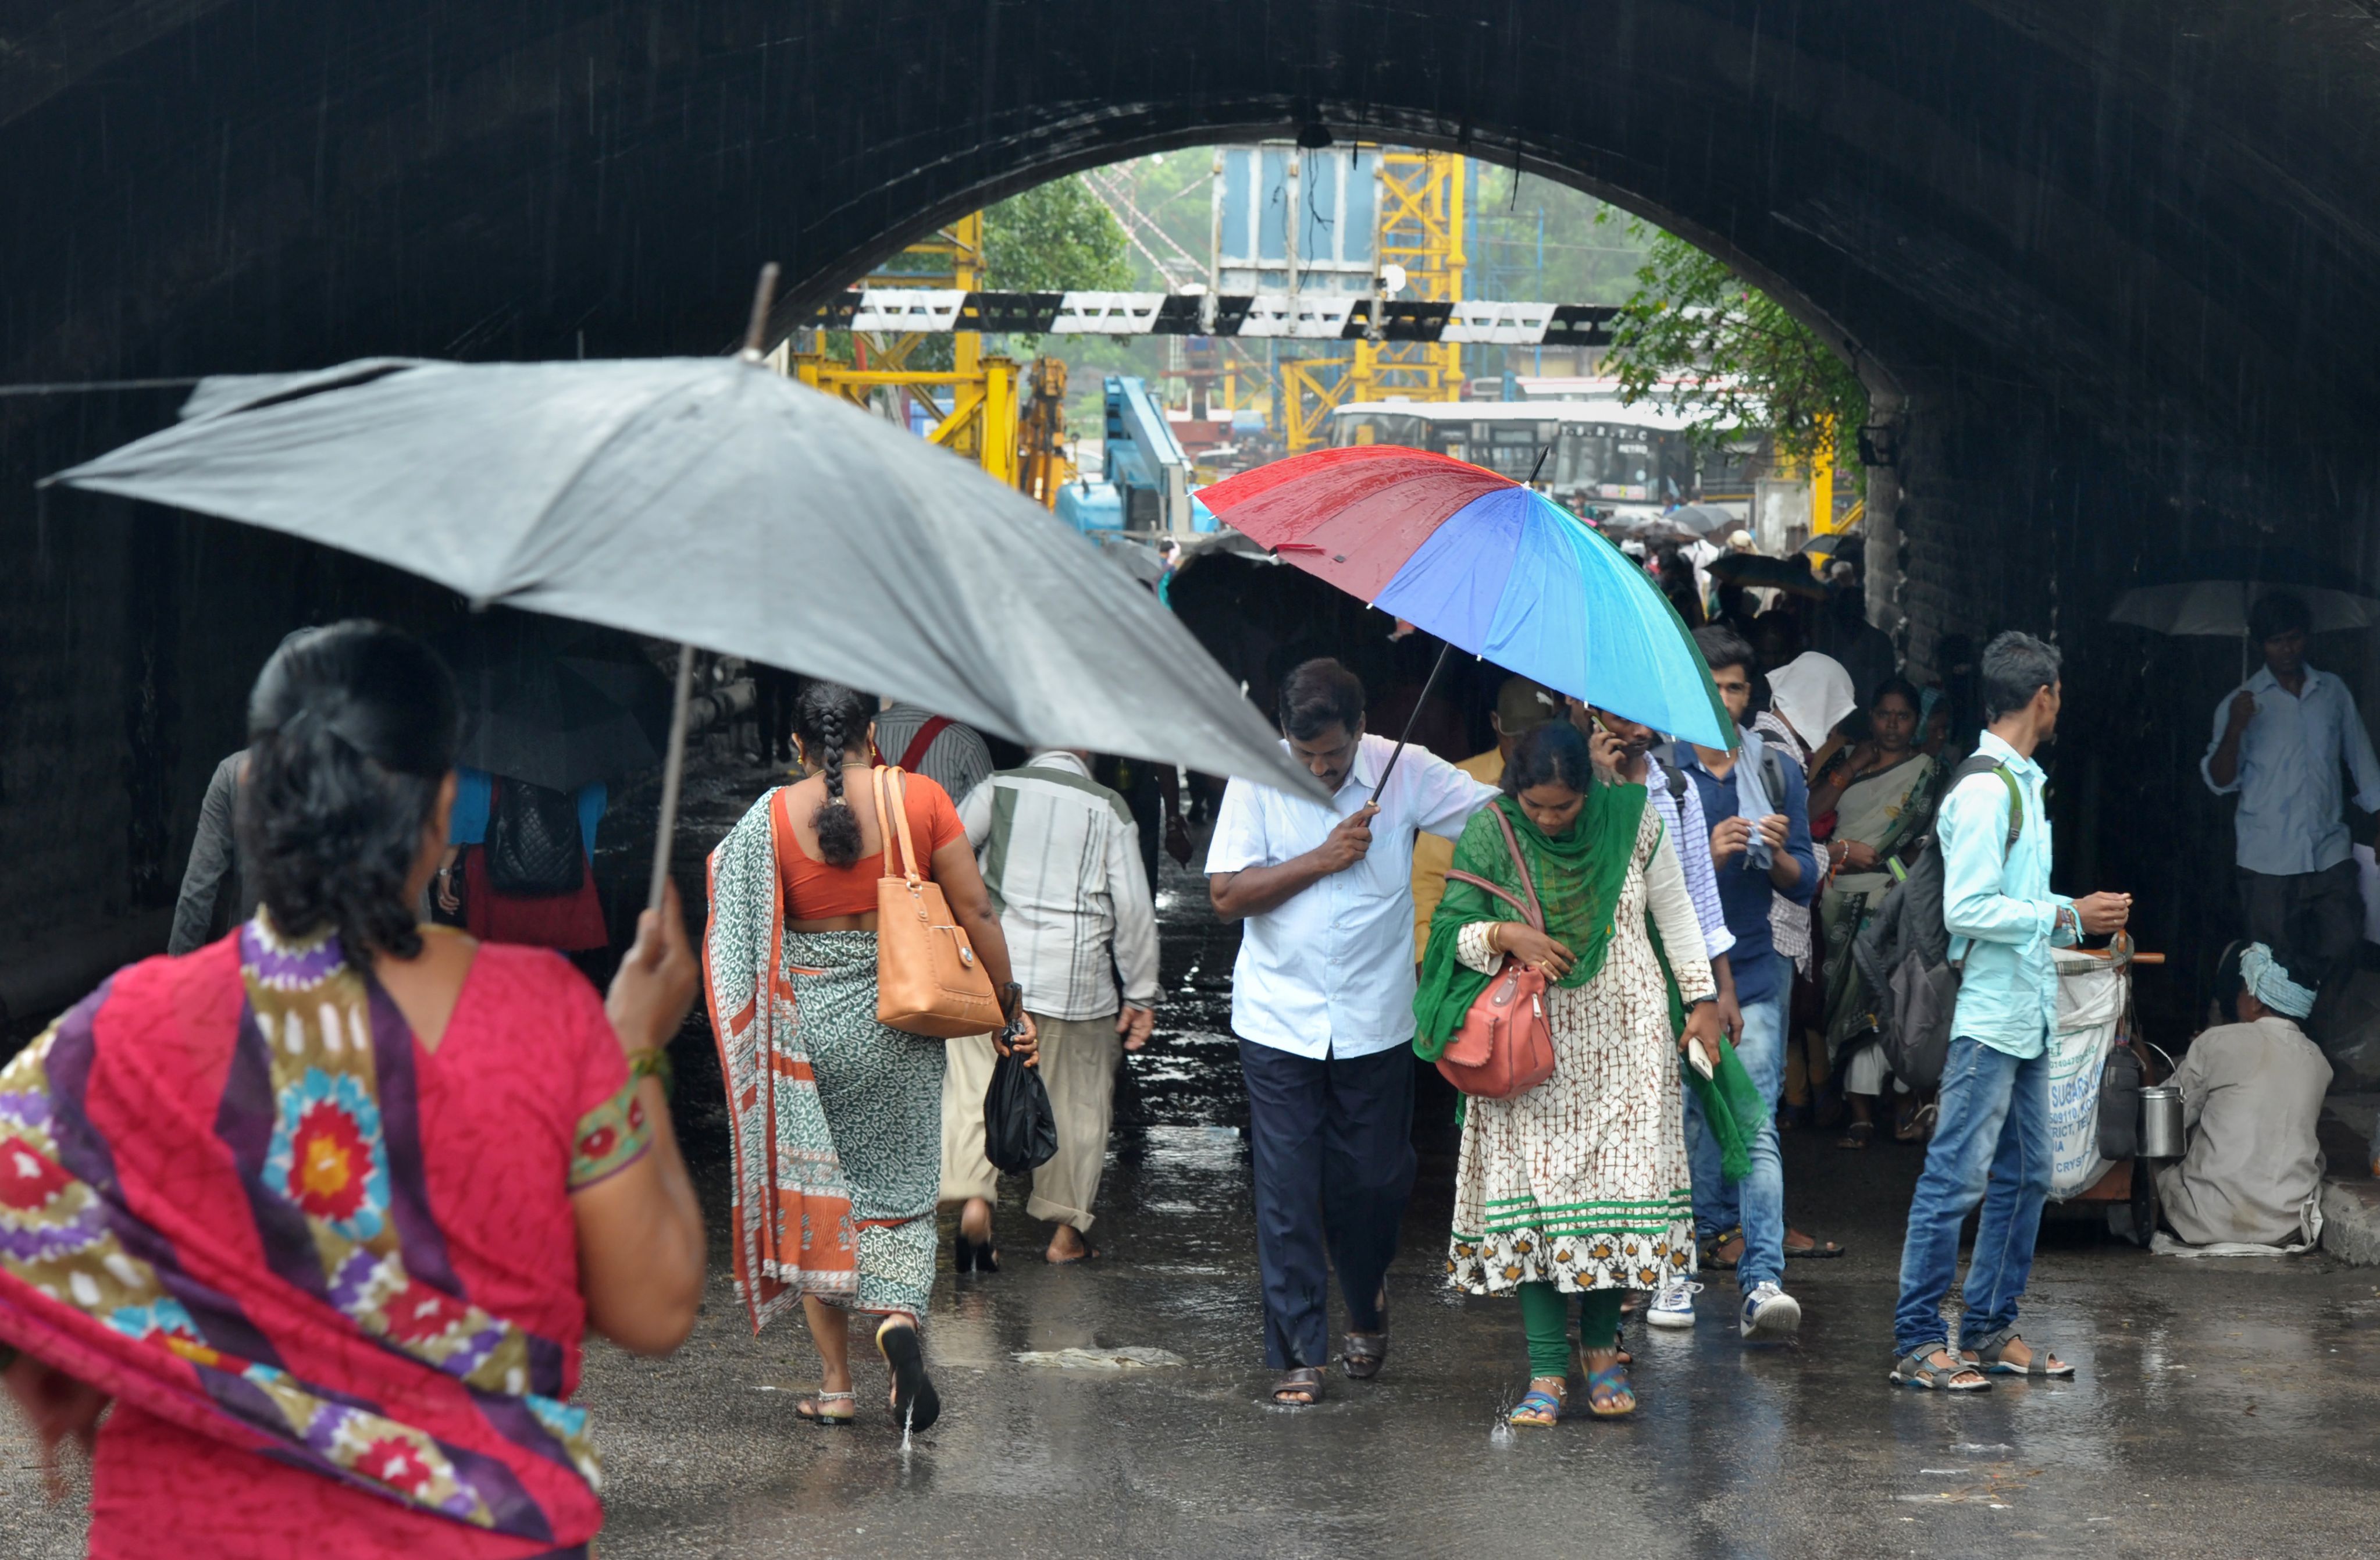 أمطار غزيرة في سيكوندراباد بالهند